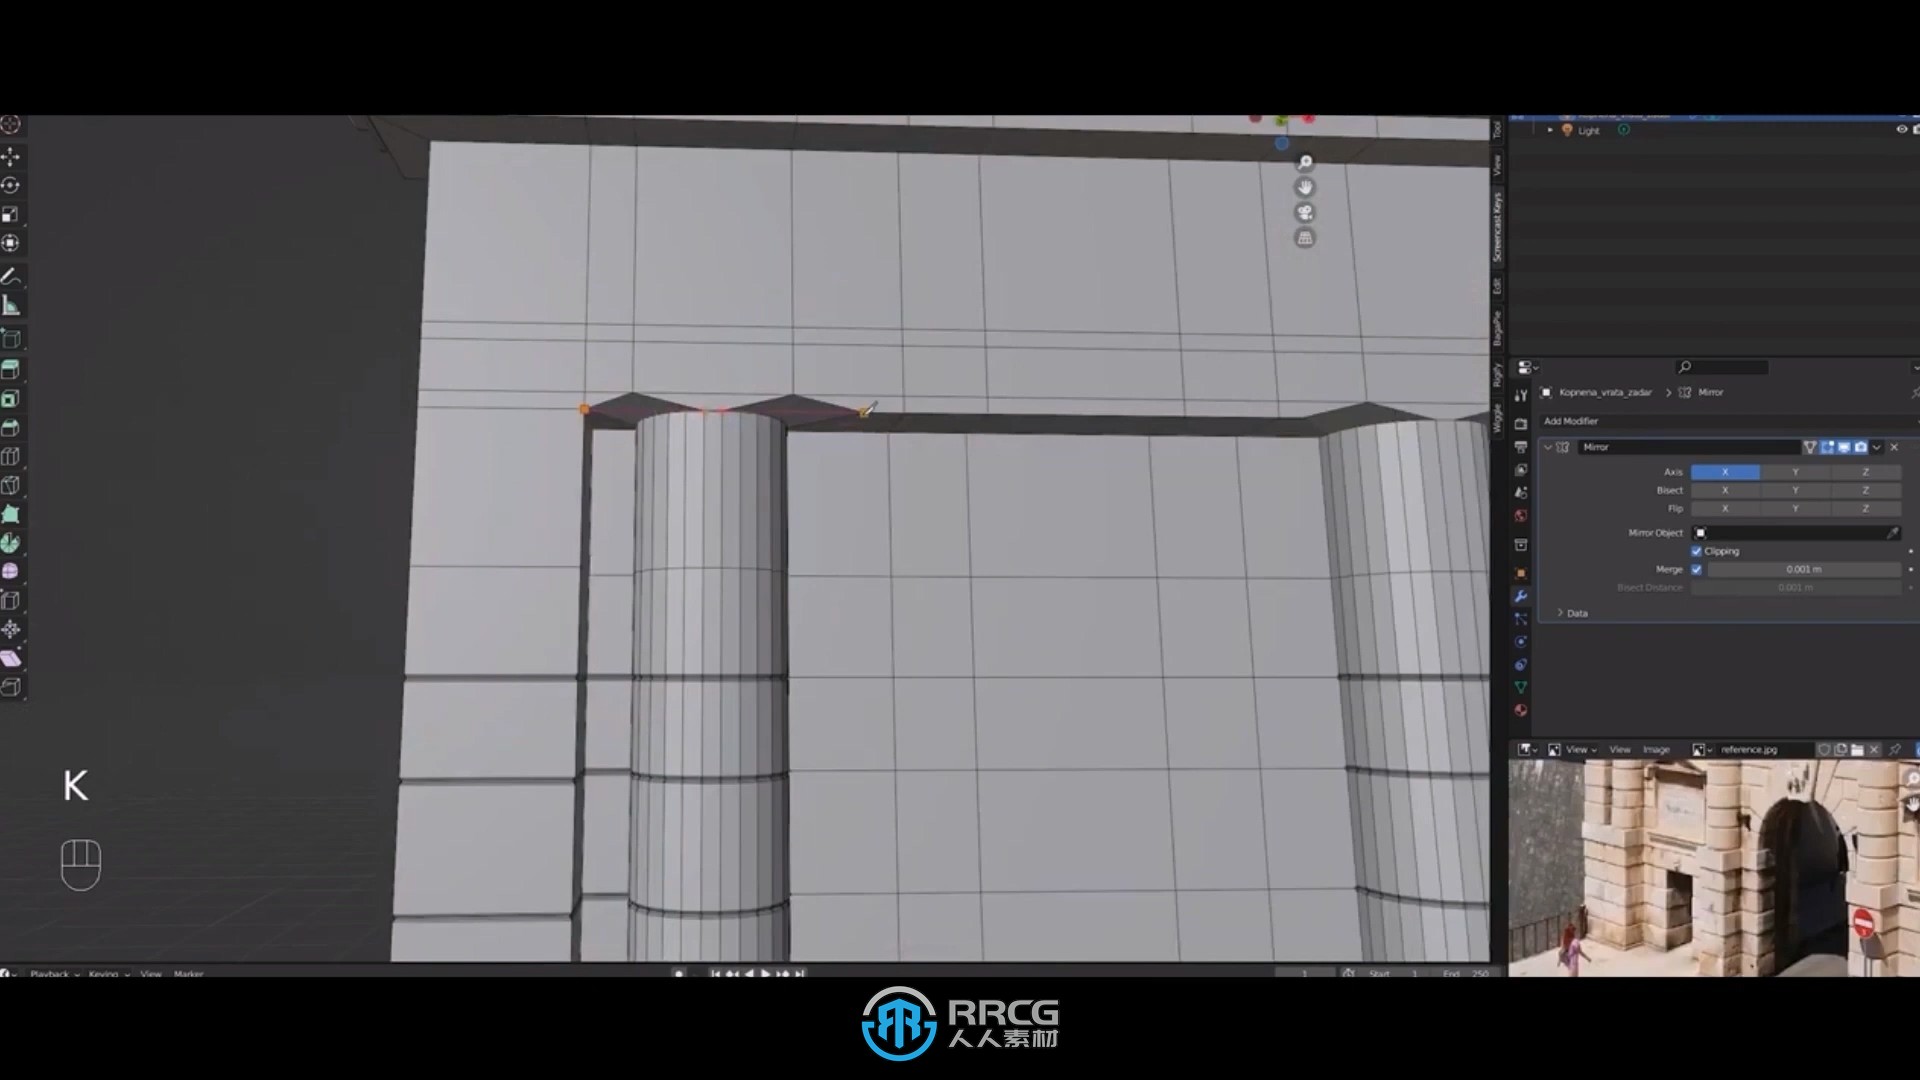 【中英双语】Blender影视级建筑场景完整制作流程视频教程